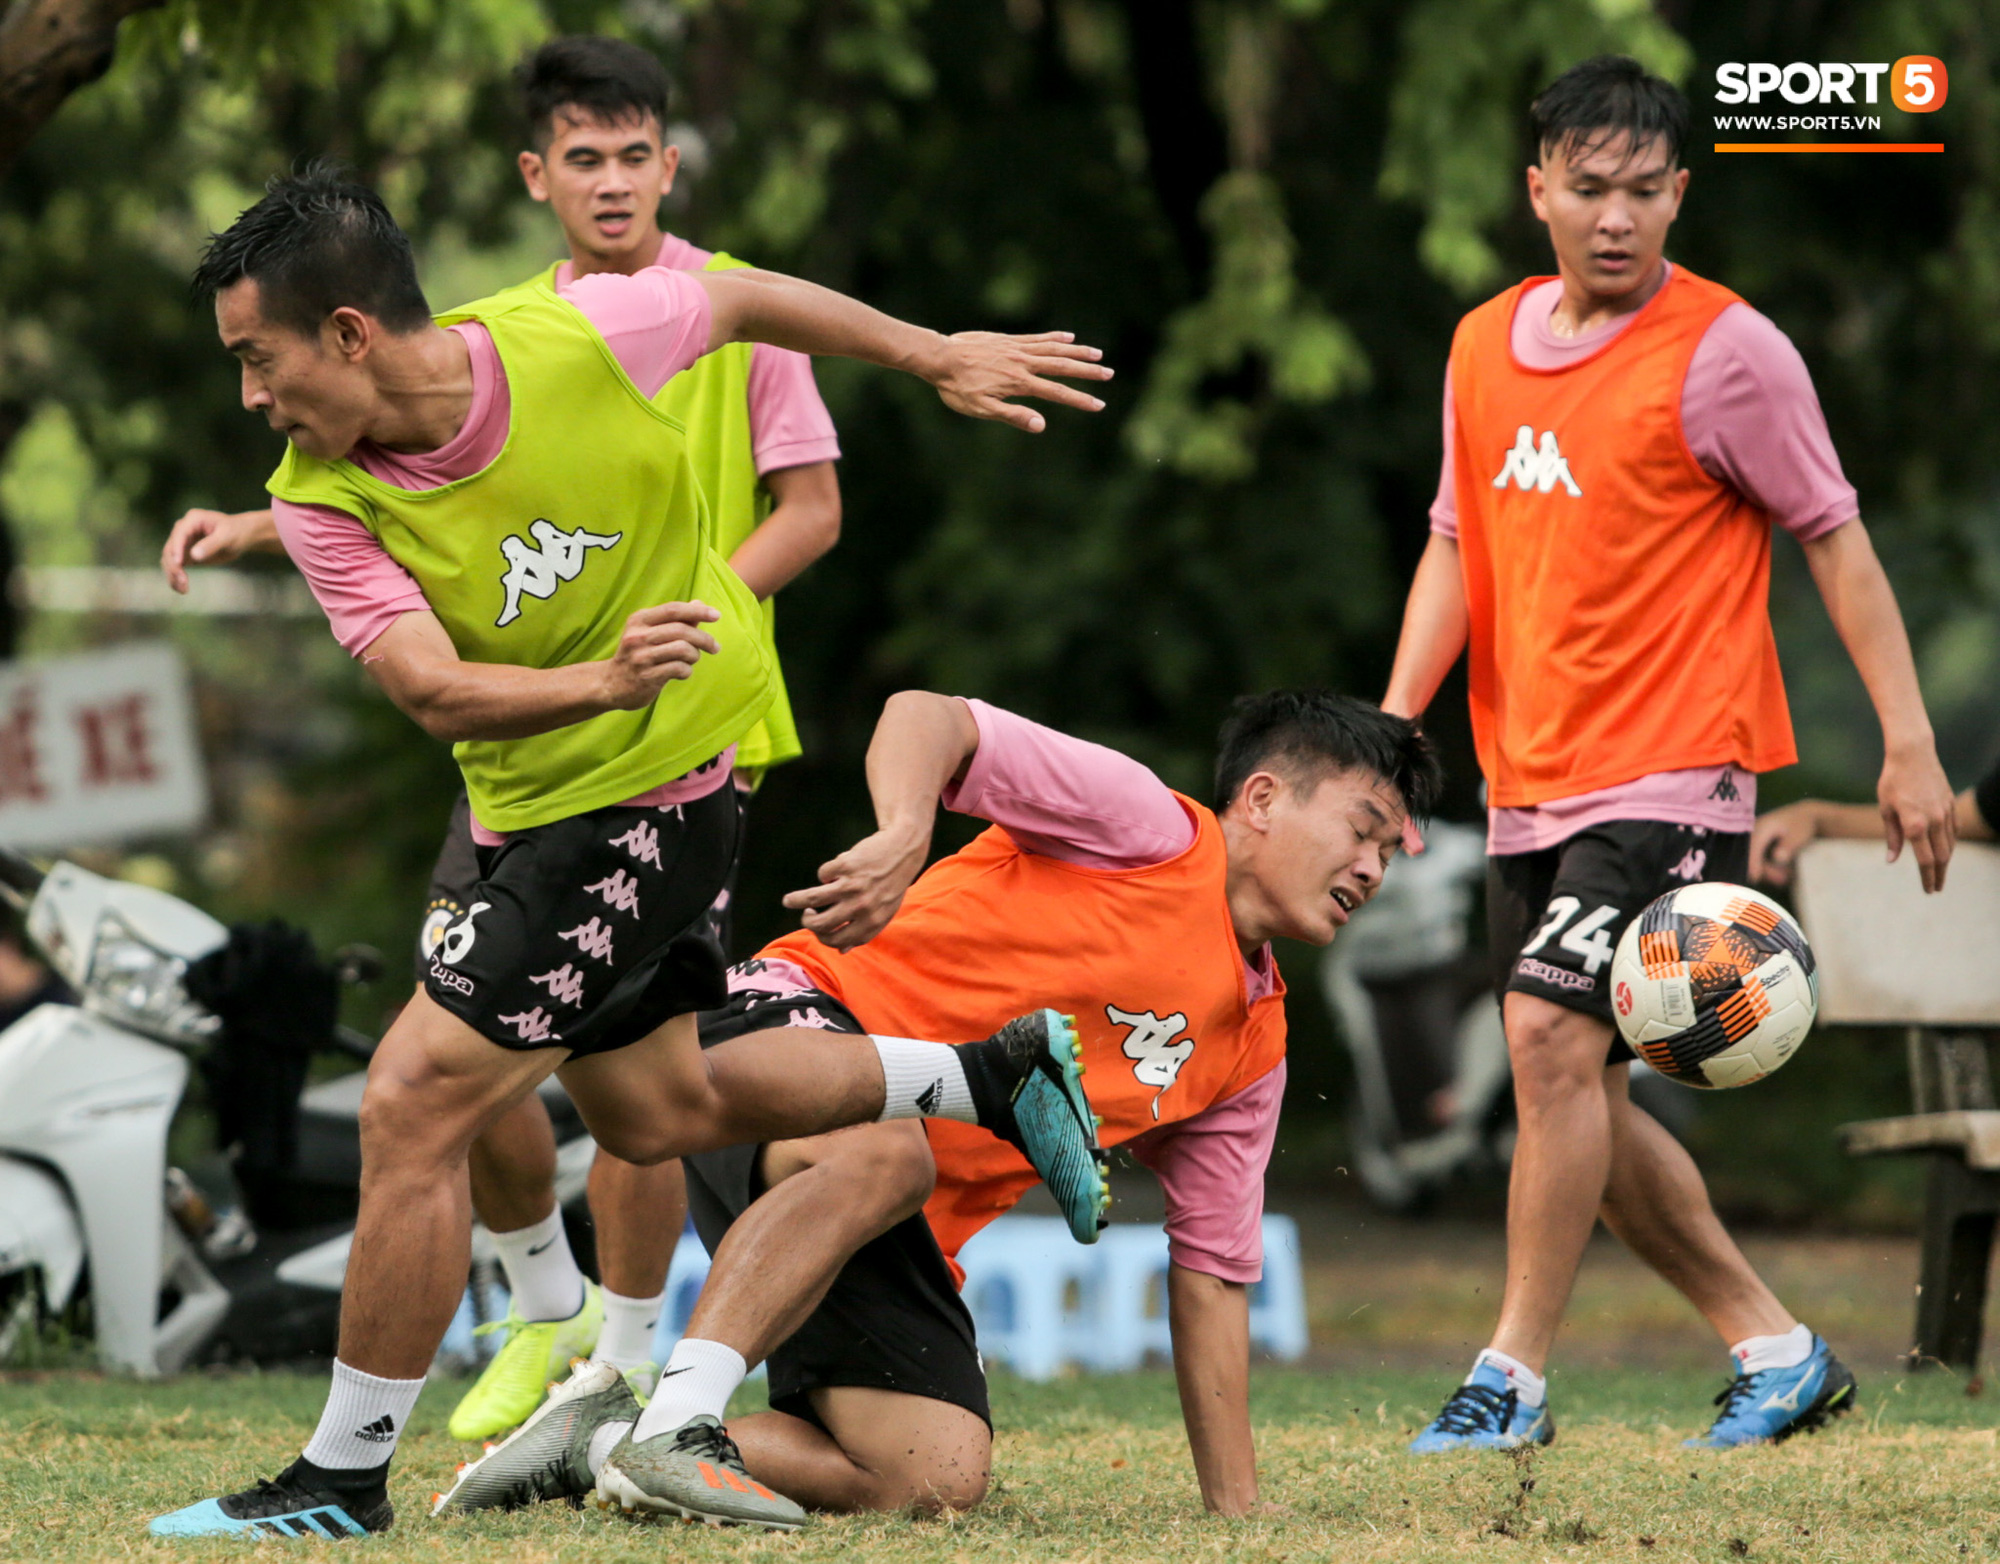 Quang Hải chưa hết chấn thương đã lại gặp bệnh, ngồi lẻ loi xem đồng đội tập luyện trước trận derby Hà Nội - Ảnh 4.